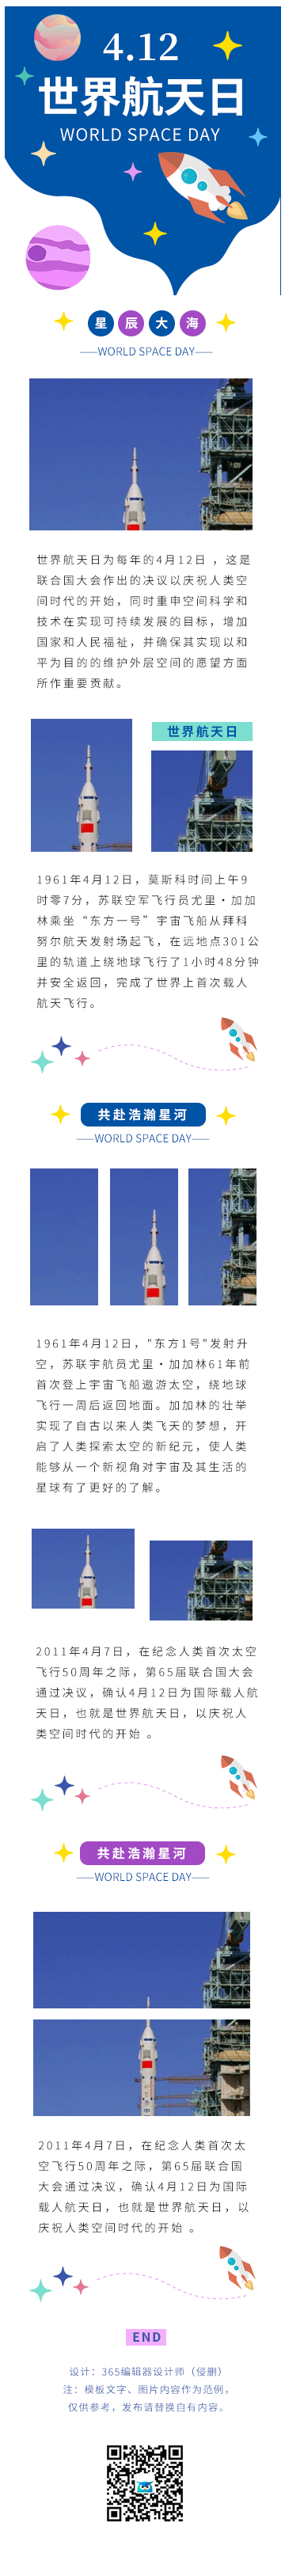 世界航天日中国航天日宇宙火箭科普科技